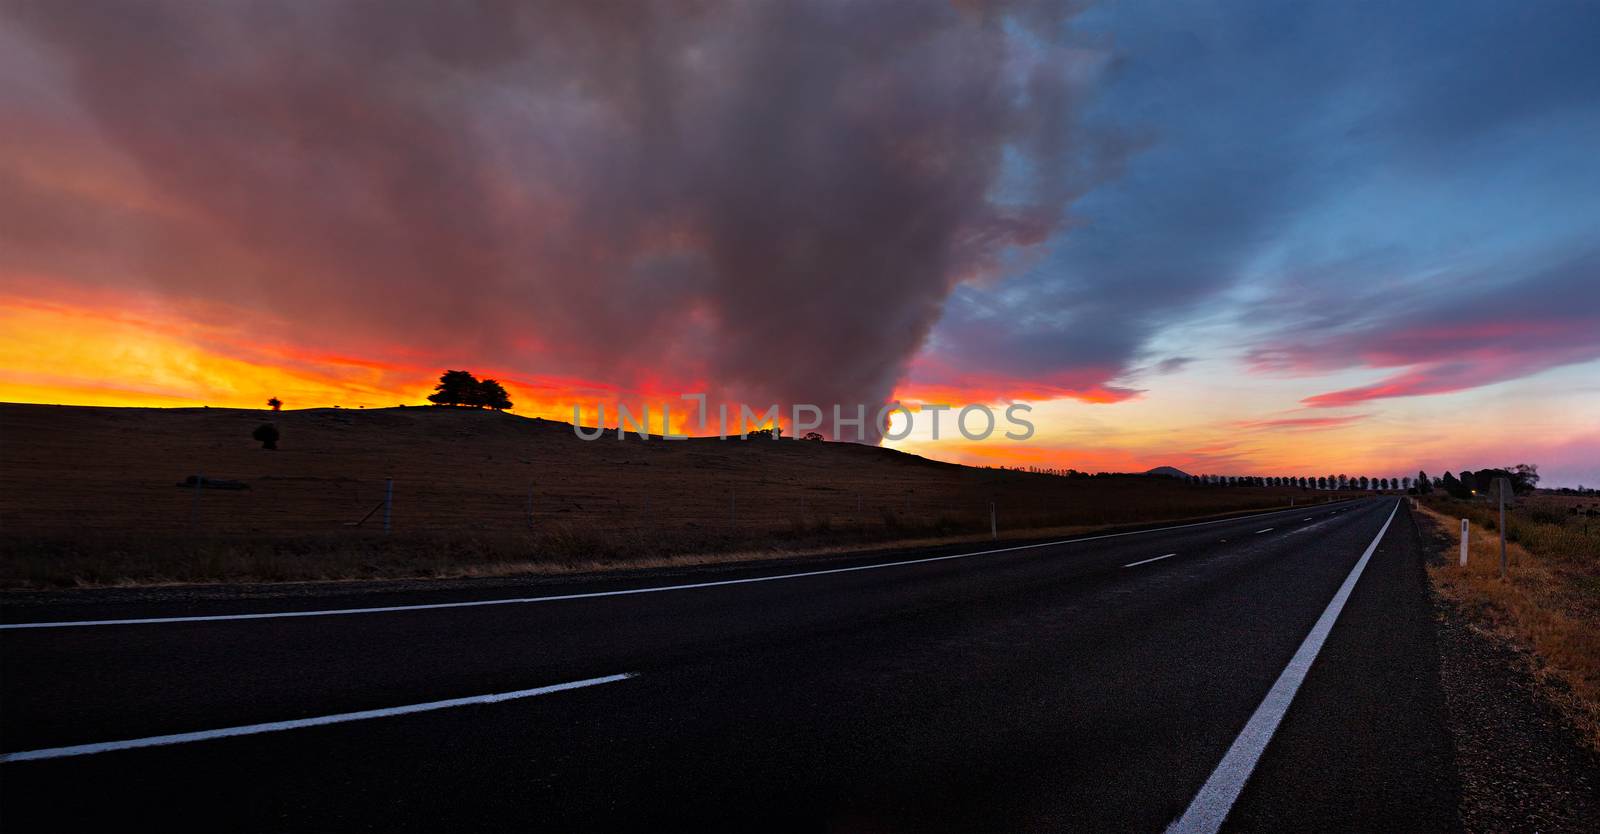 Bush fire in rural Australia in summer season